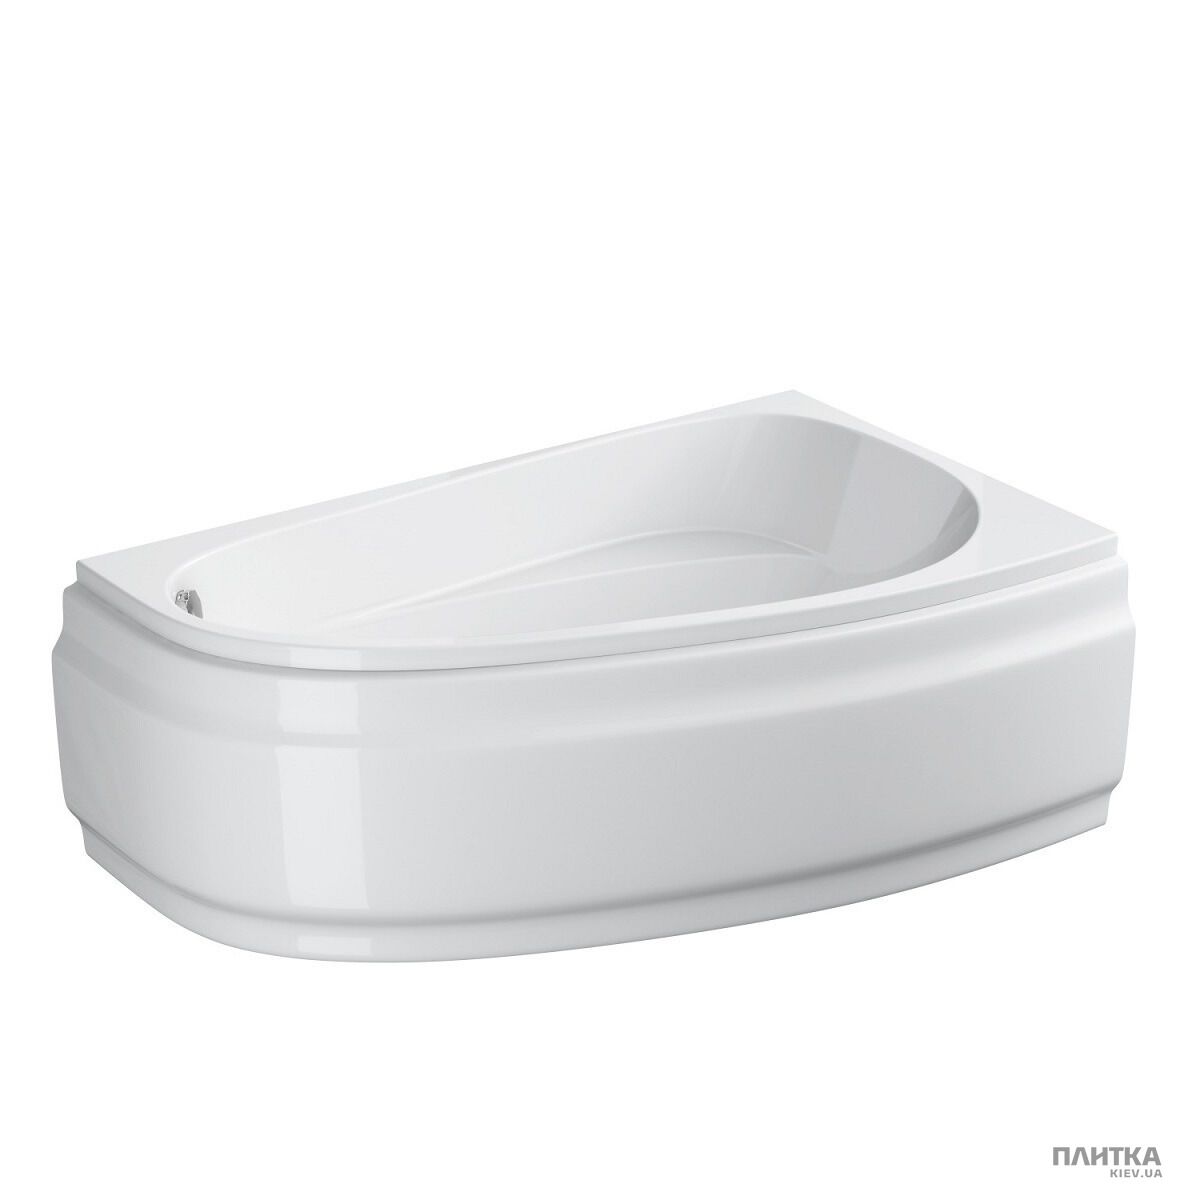 Акриловая ванна Cersanit Joanna New 160x95 см правая, асимметричная белый